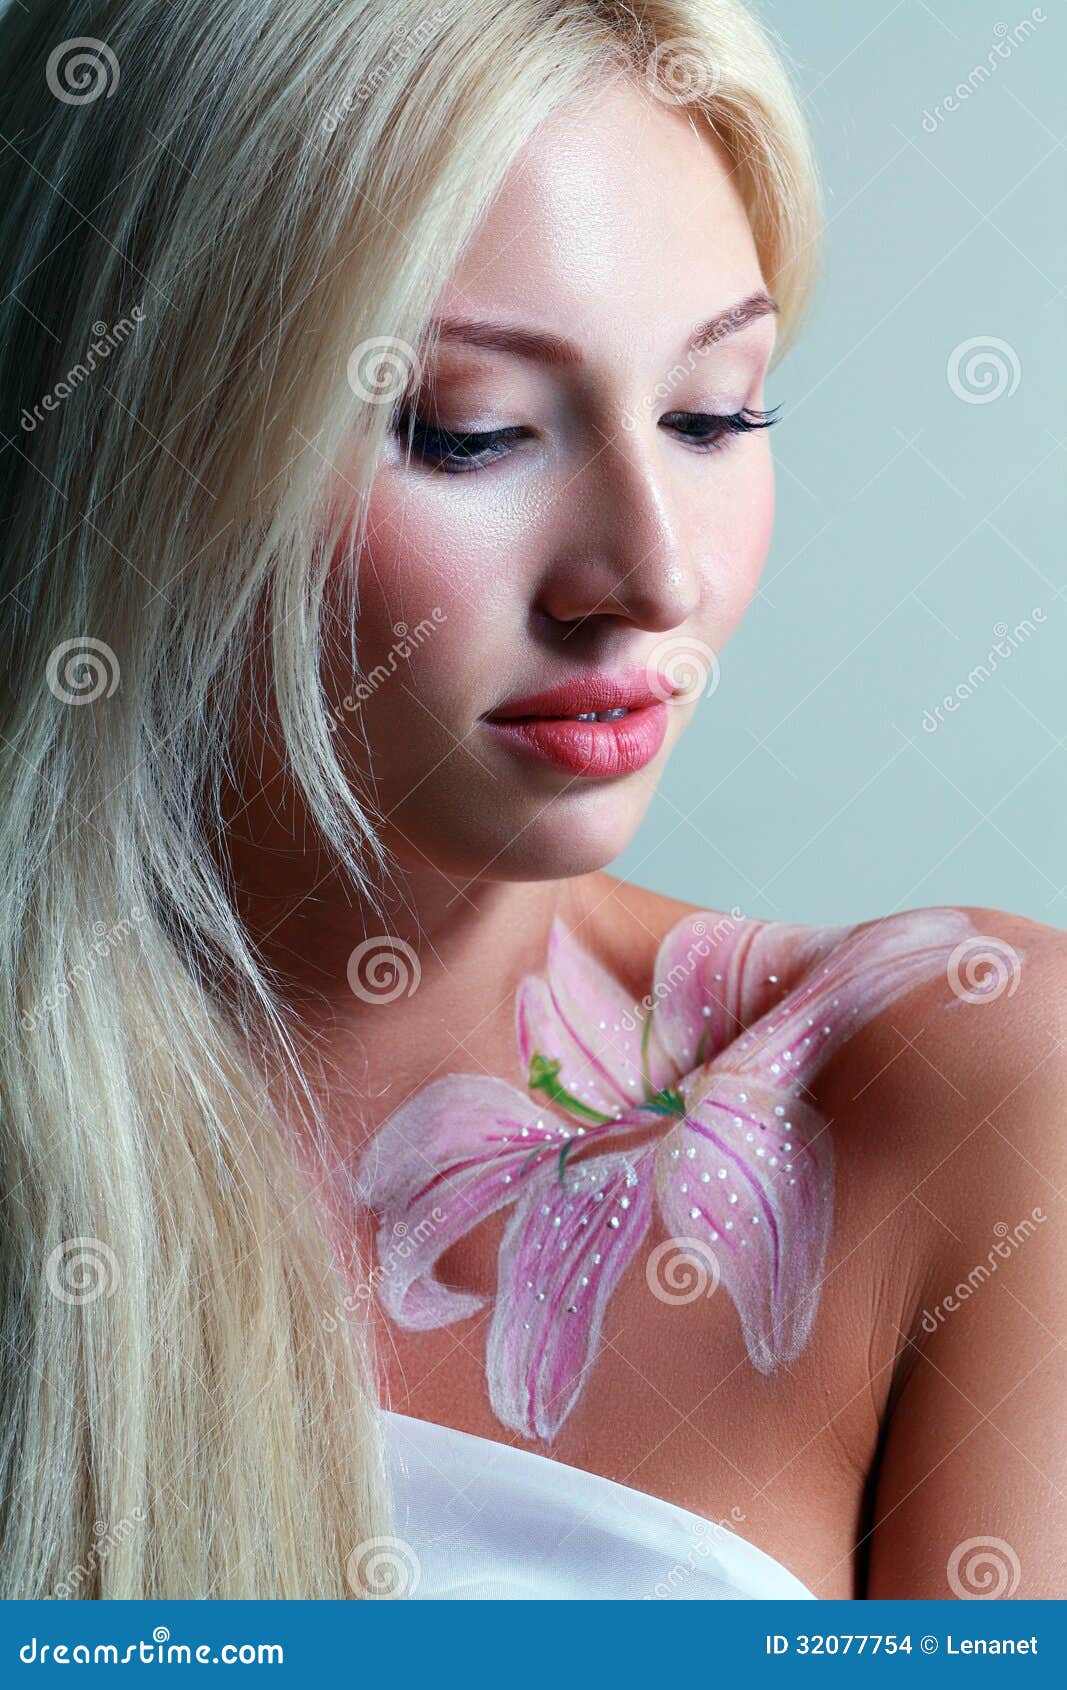 Fantasy Flower Body-art Stock Images - Image: 32077754